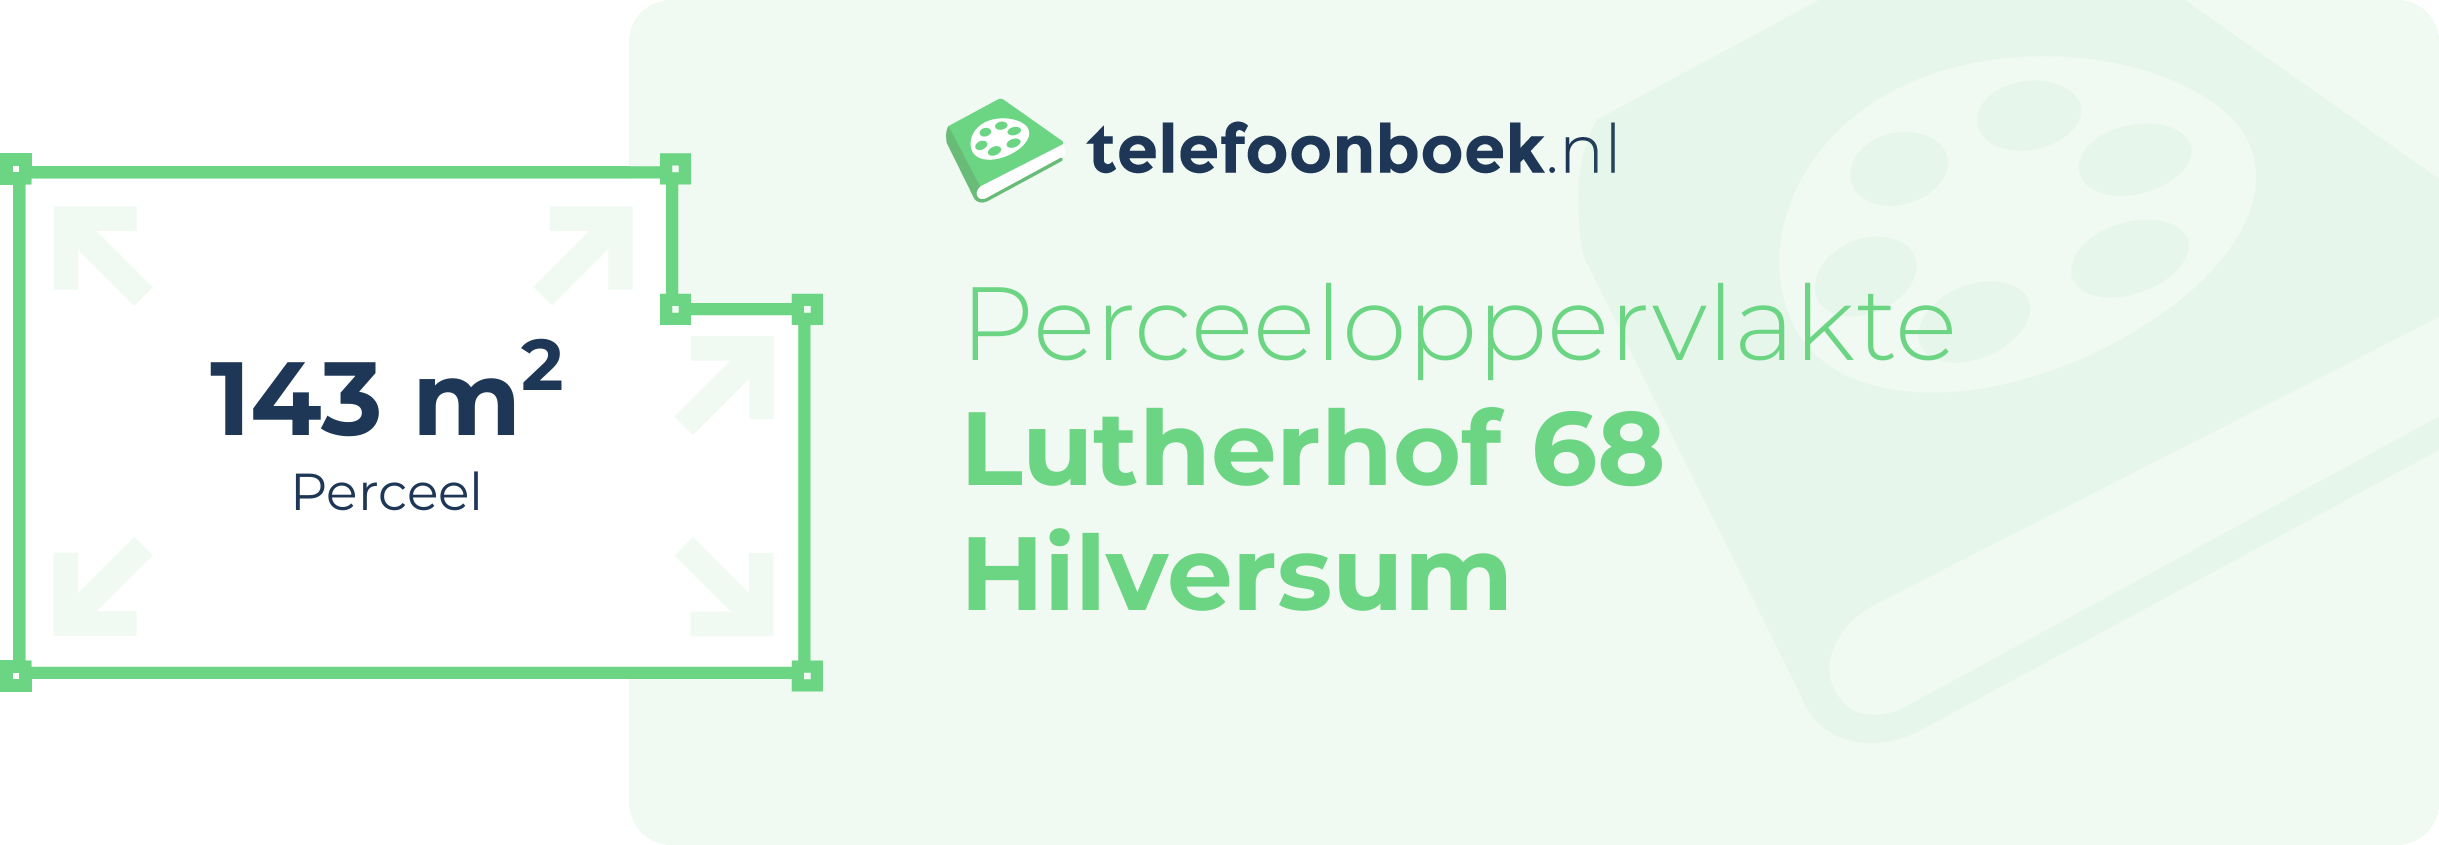 Perceeloppervlakte Lutherhof 68 Hilversum